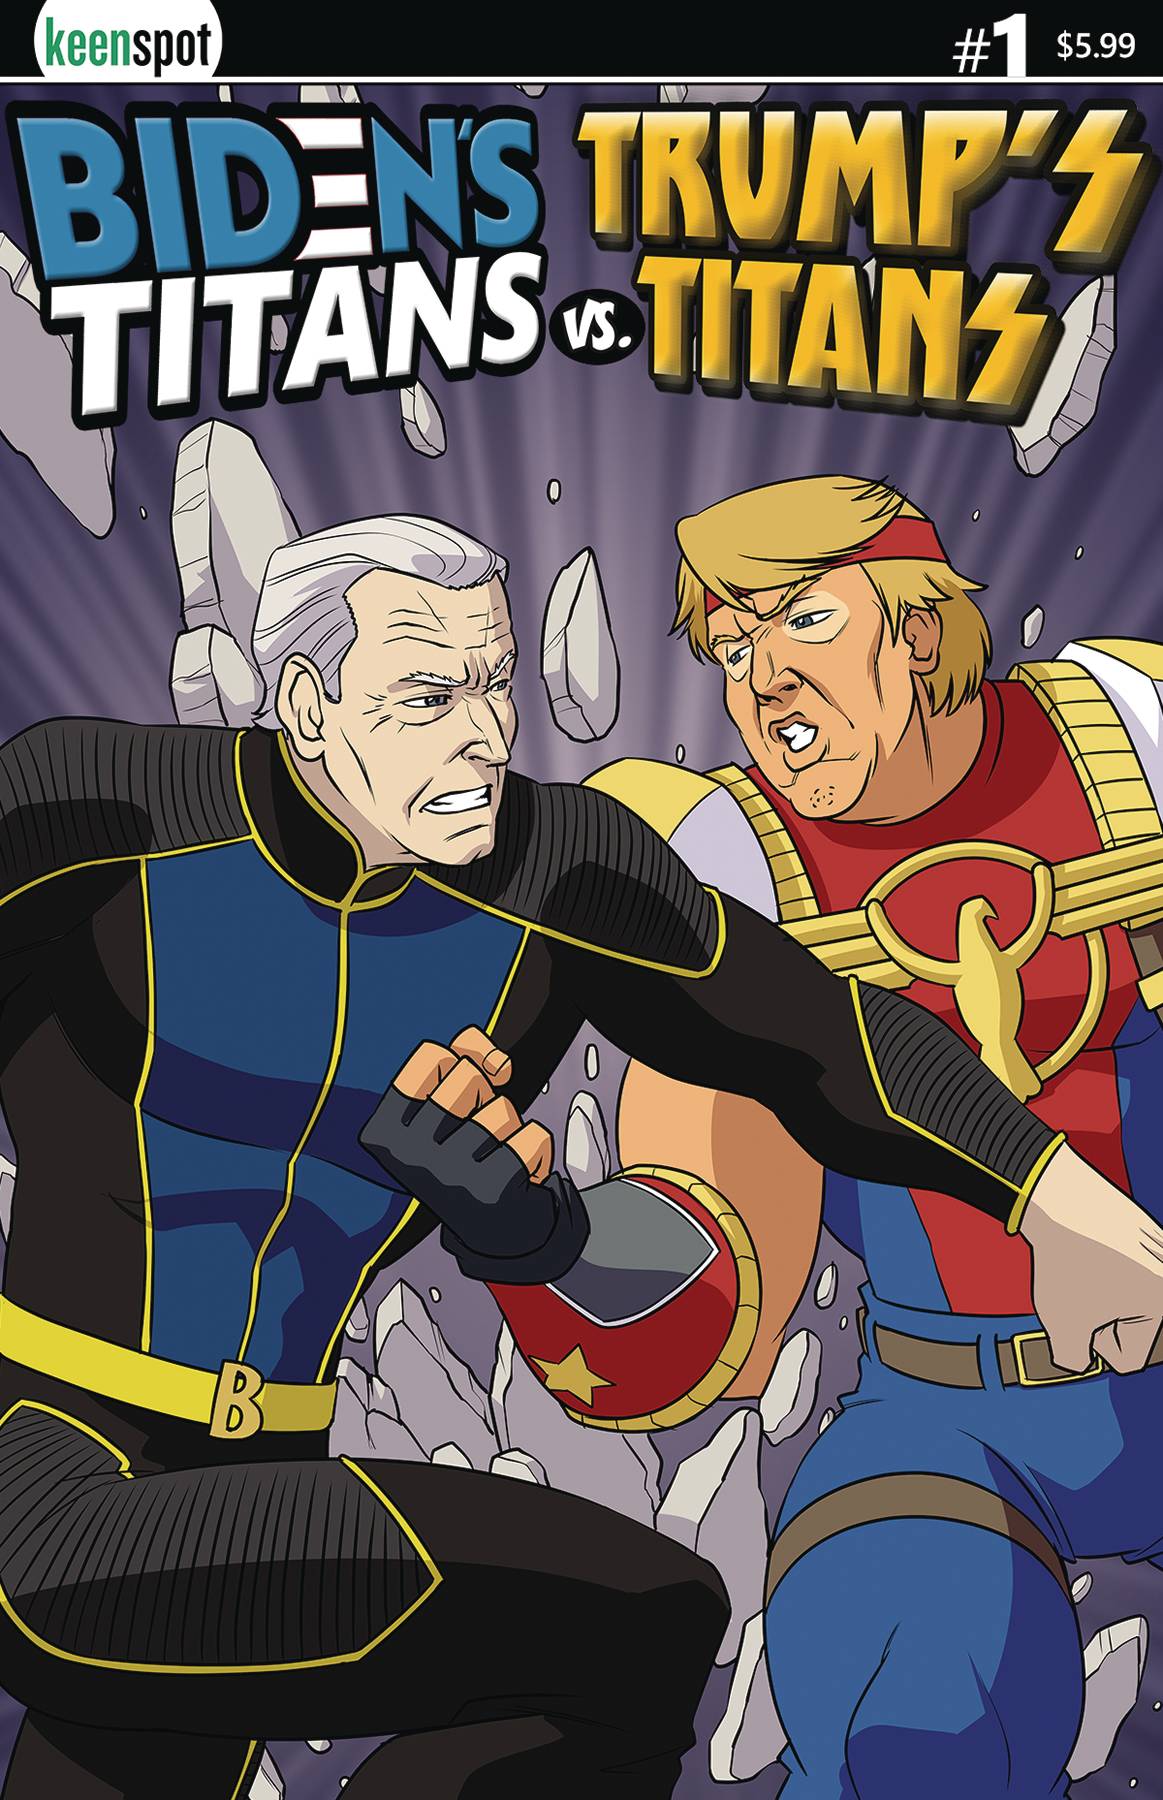 BIDENS TITANS VS TRUMPS TITANS #1 CVR B JOE VS DONALD 2024 comic book KEENSPOT ENTERTAINMENT   